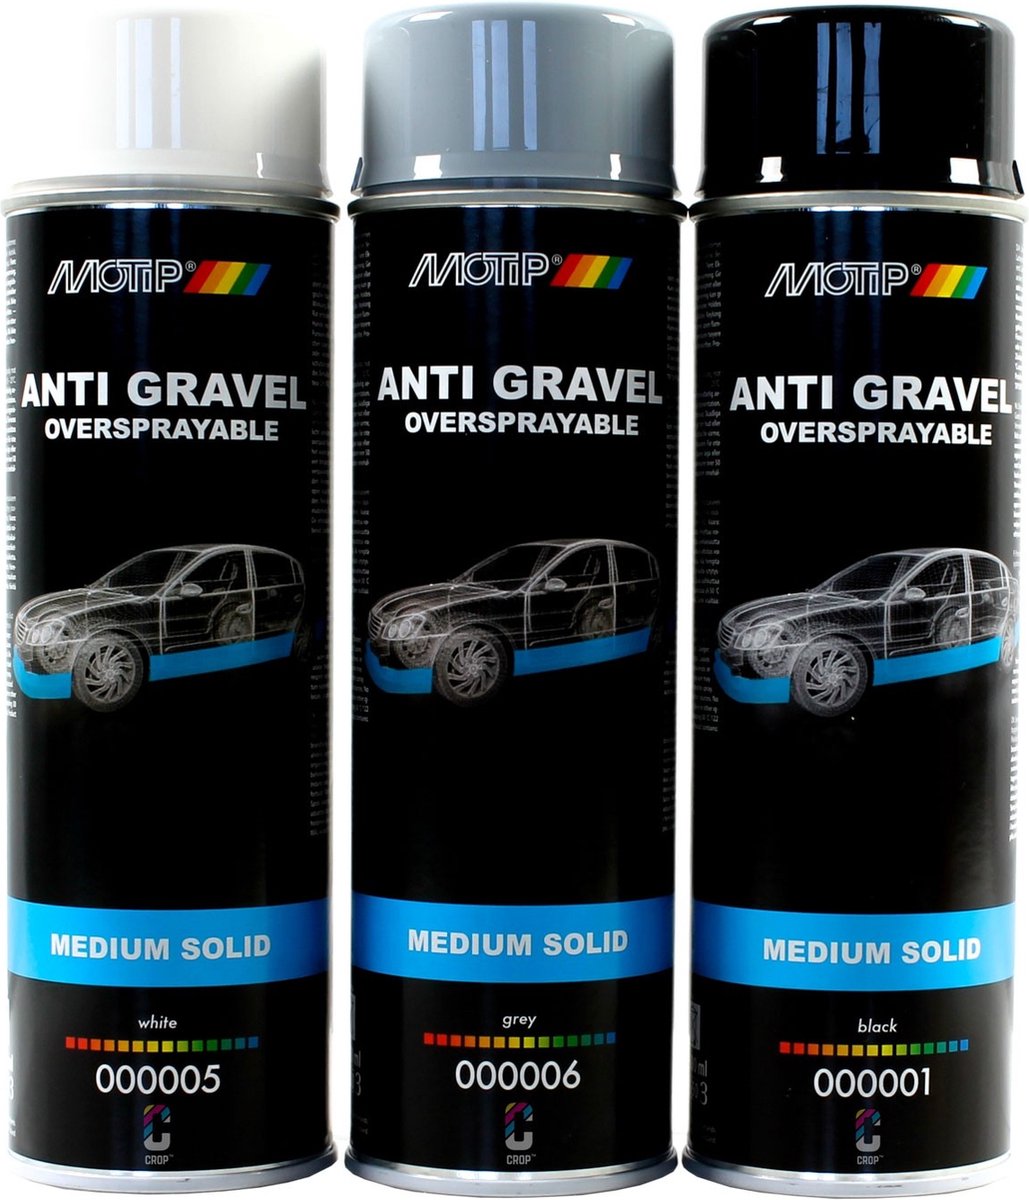 Zwarte bitumenspray voor bescherming van carrosserieonderzijde PRESTO 500  ml - Auto5